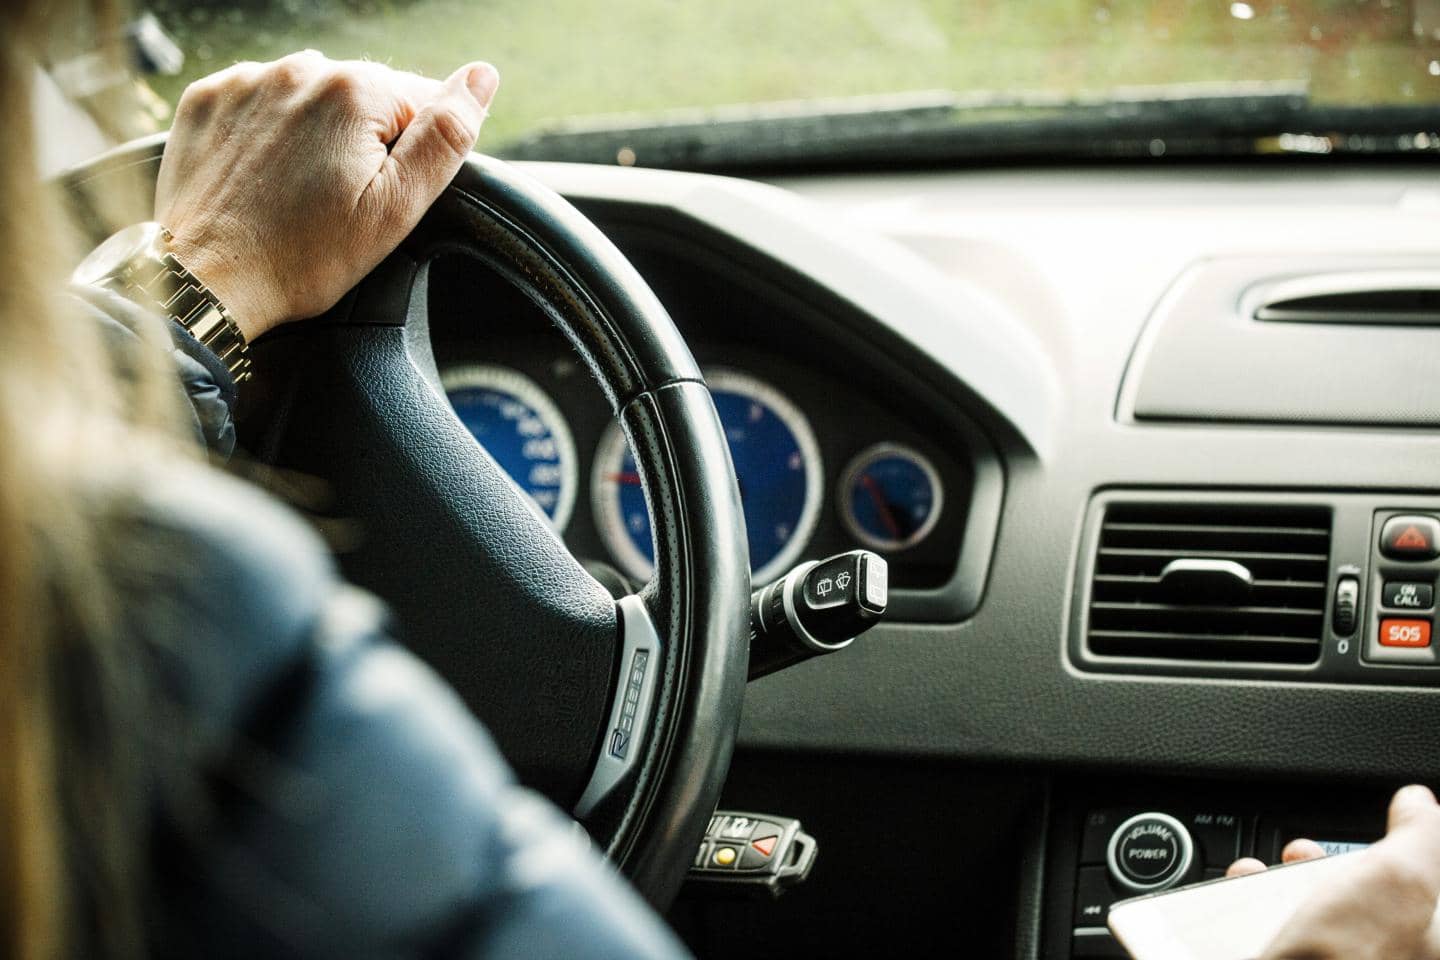 tryg drive giver dig en billig bilforsikring når du kører godt